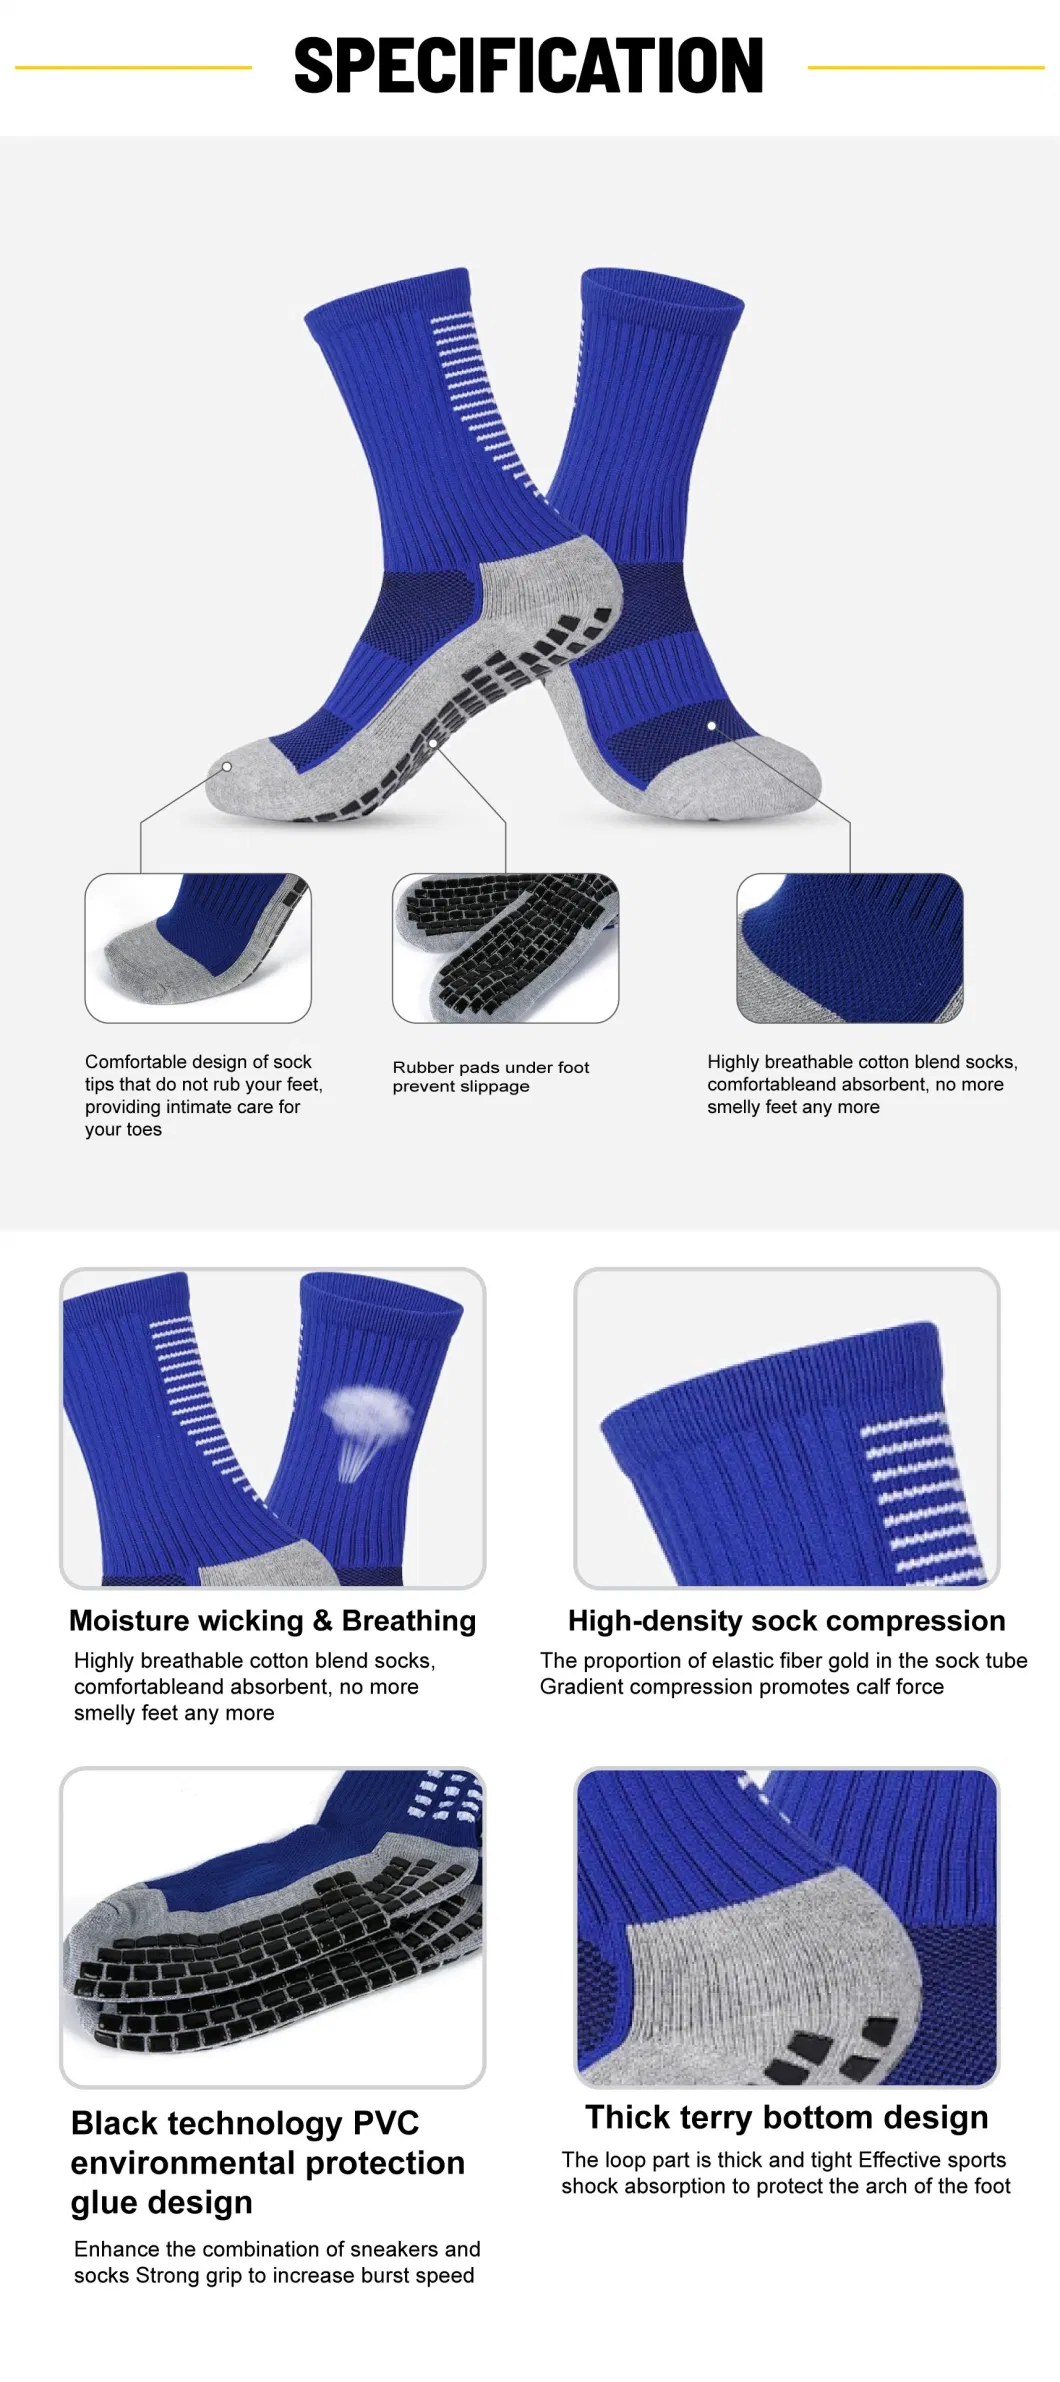 Custom Basketball Grip Soccer Long Anti Slip Stockings Sports Football Socks